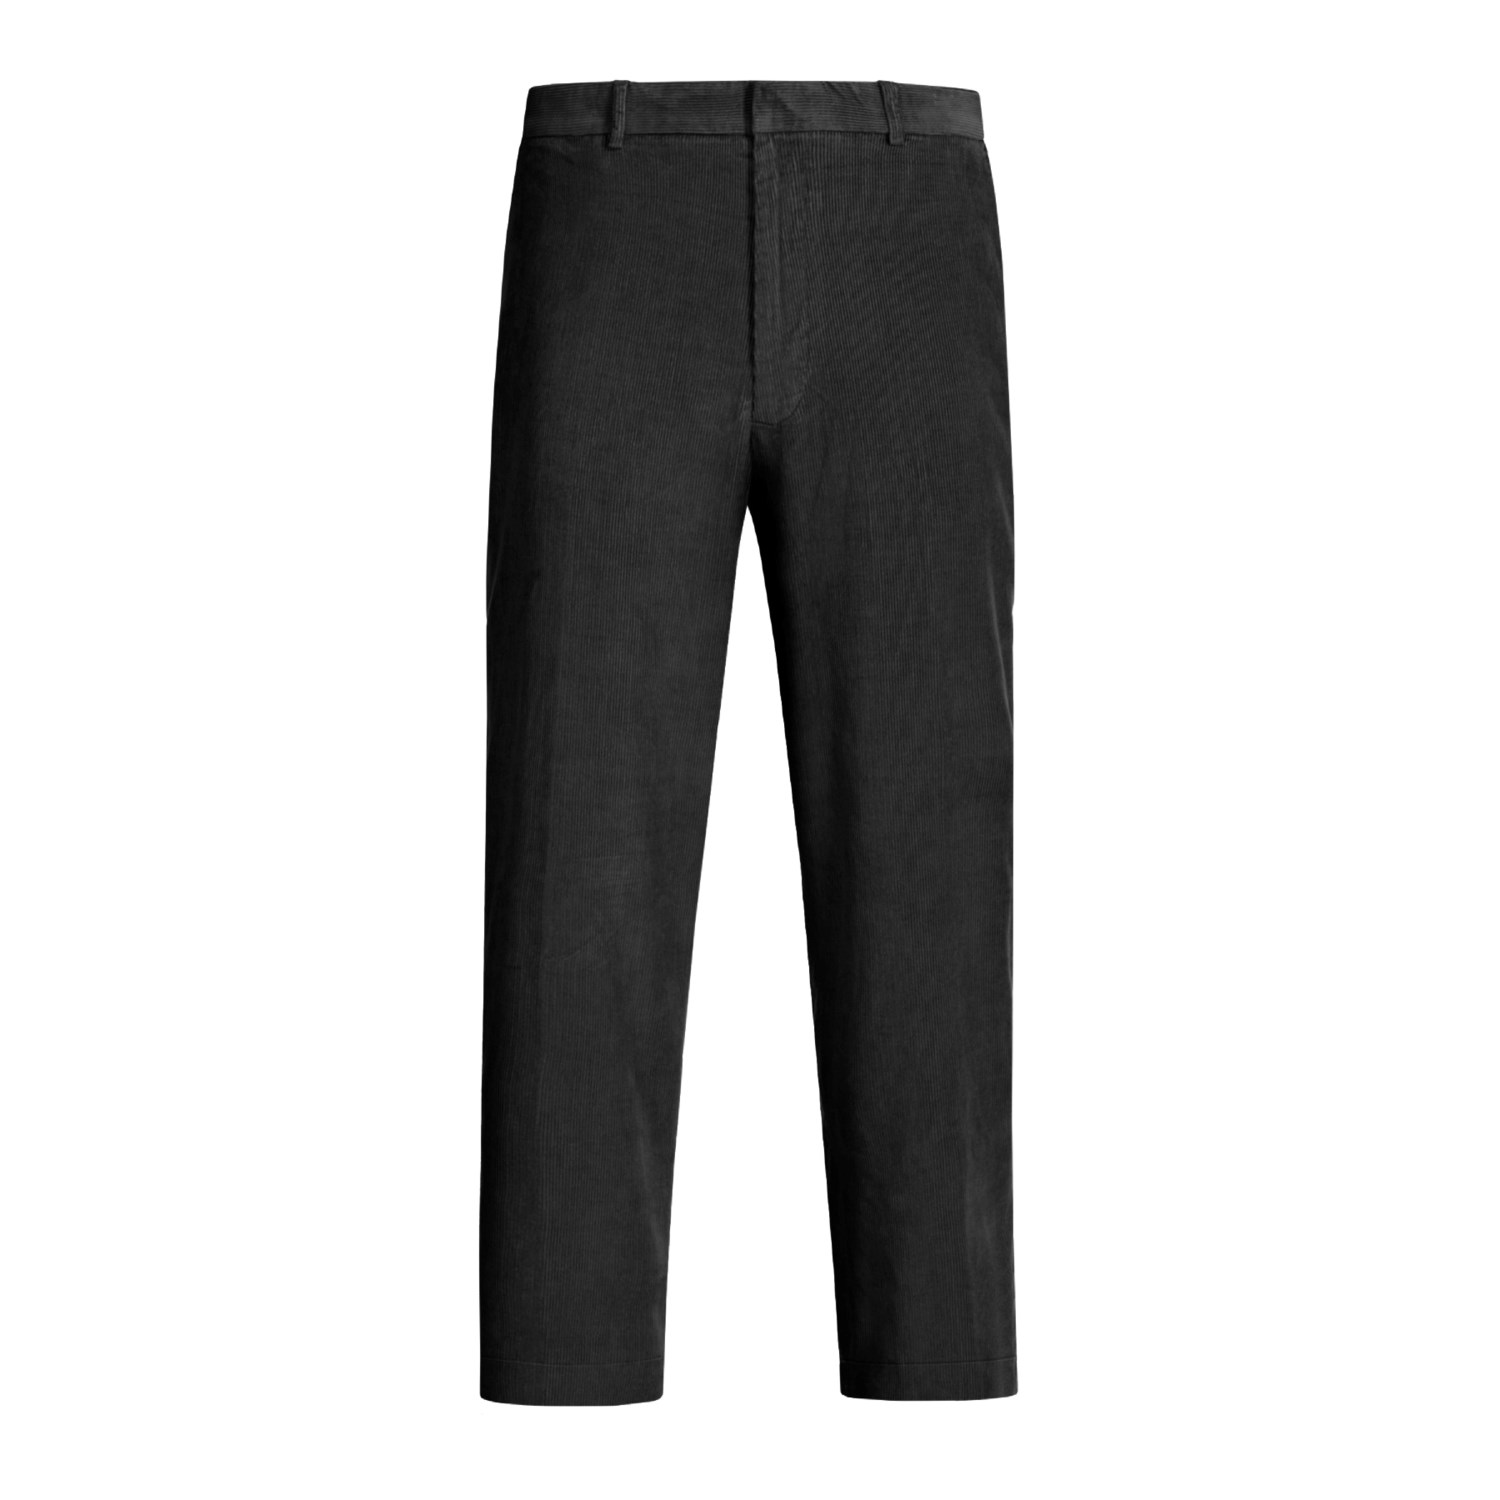 Rigid 8-Wale Corduroy Pants (For Men) 2716K - Save 62%